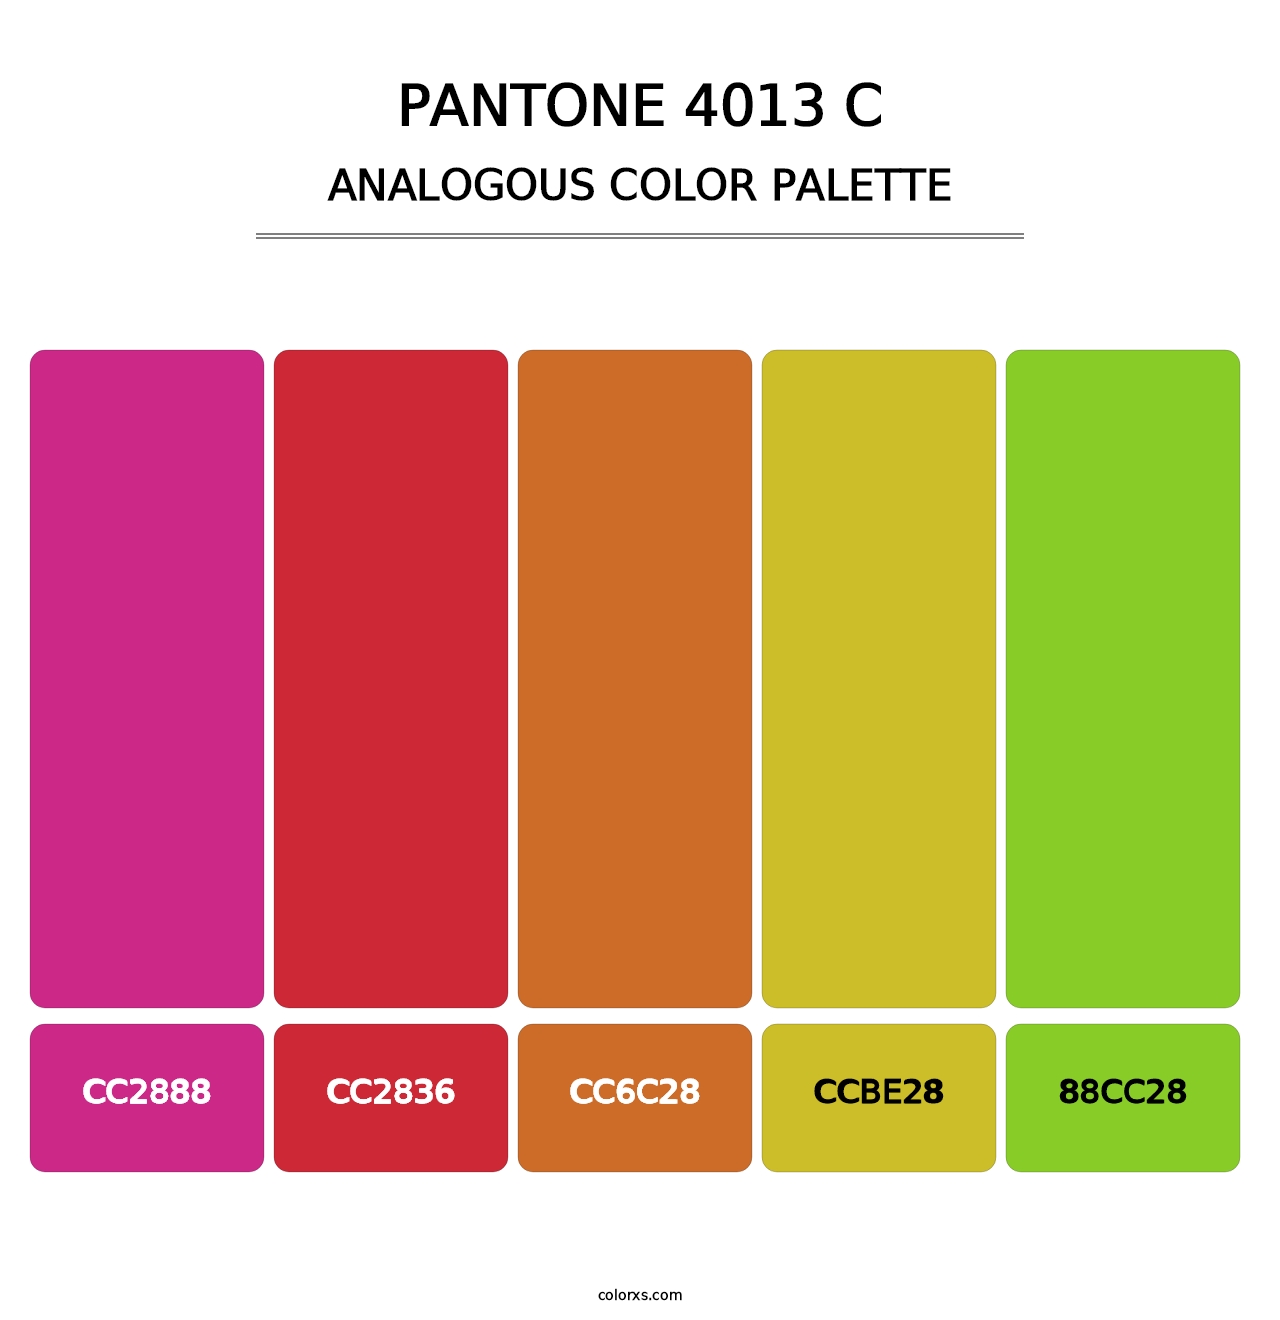 PANTONE 4013 C - Analogous Color Palette